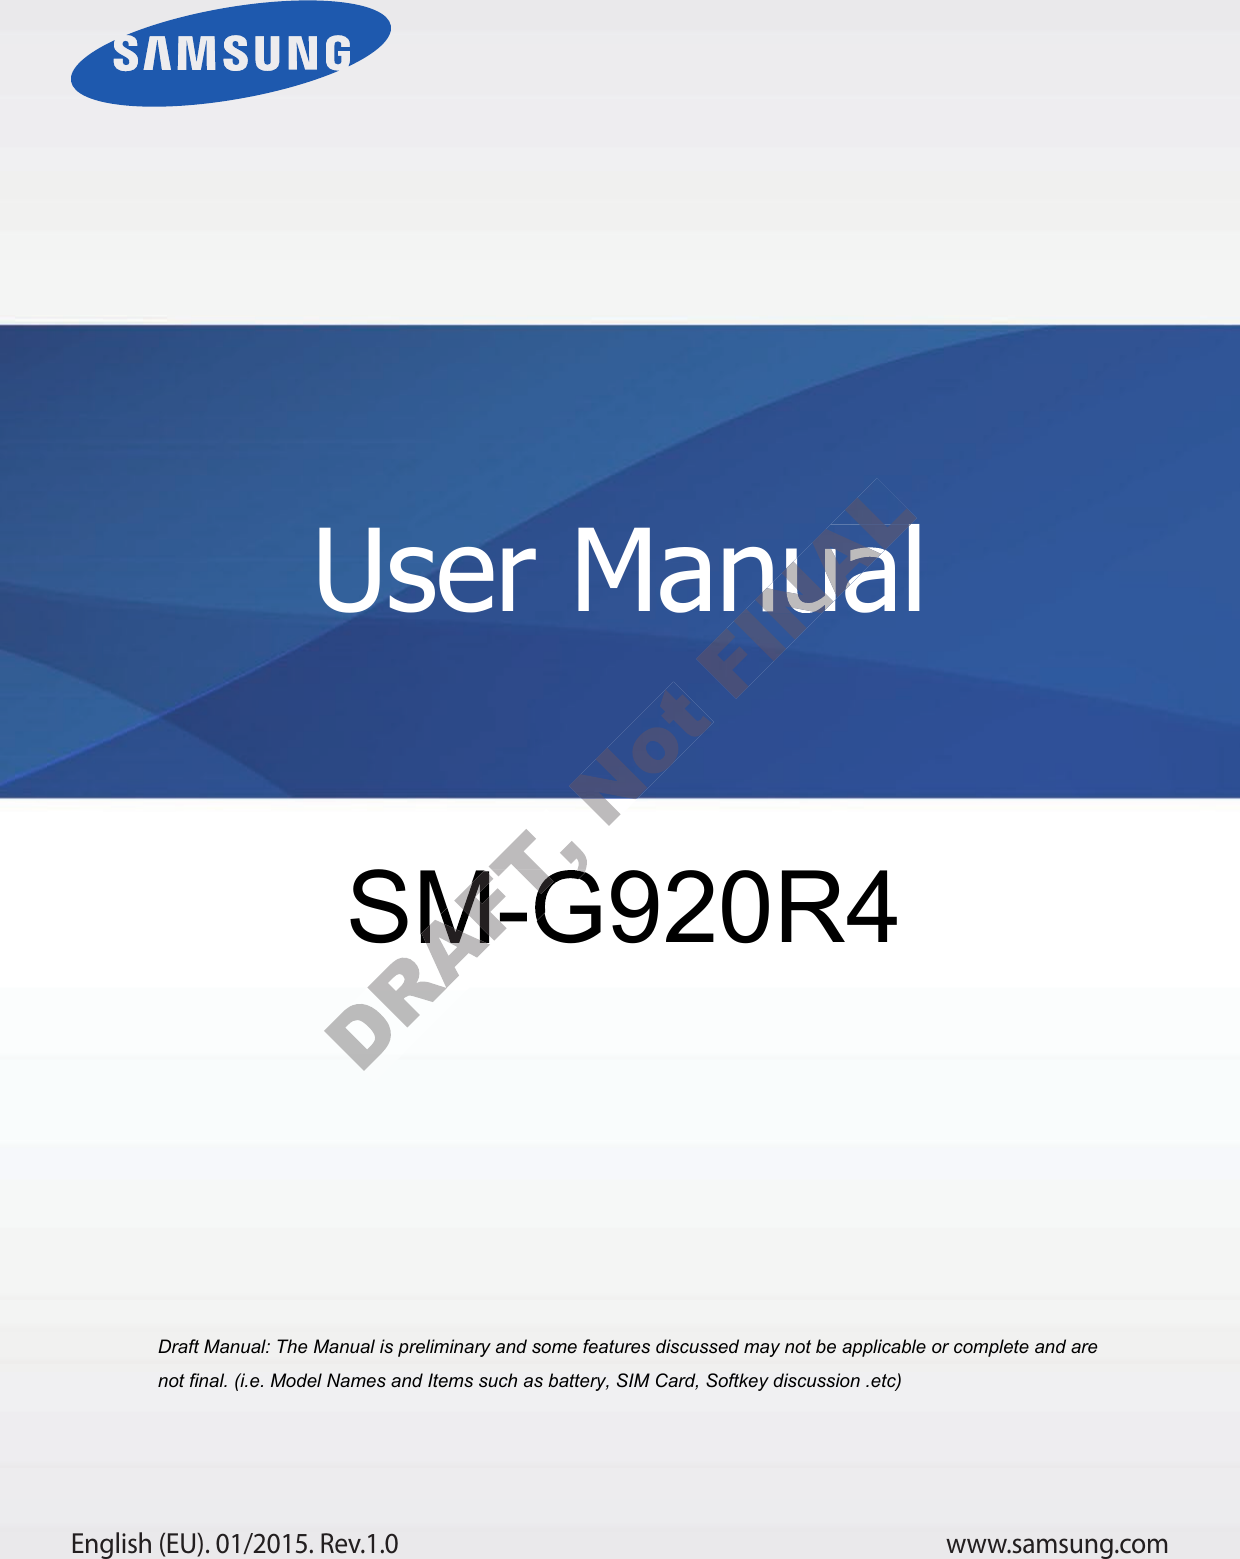 www.samsung.comUser ManualEnglish (EU). 01/2015. Rev.1.0a ana  ana  na and  a dd a n  aa   and a n na  d a and   a a  ad  dn SM-G920R4 User ManualUser Manual